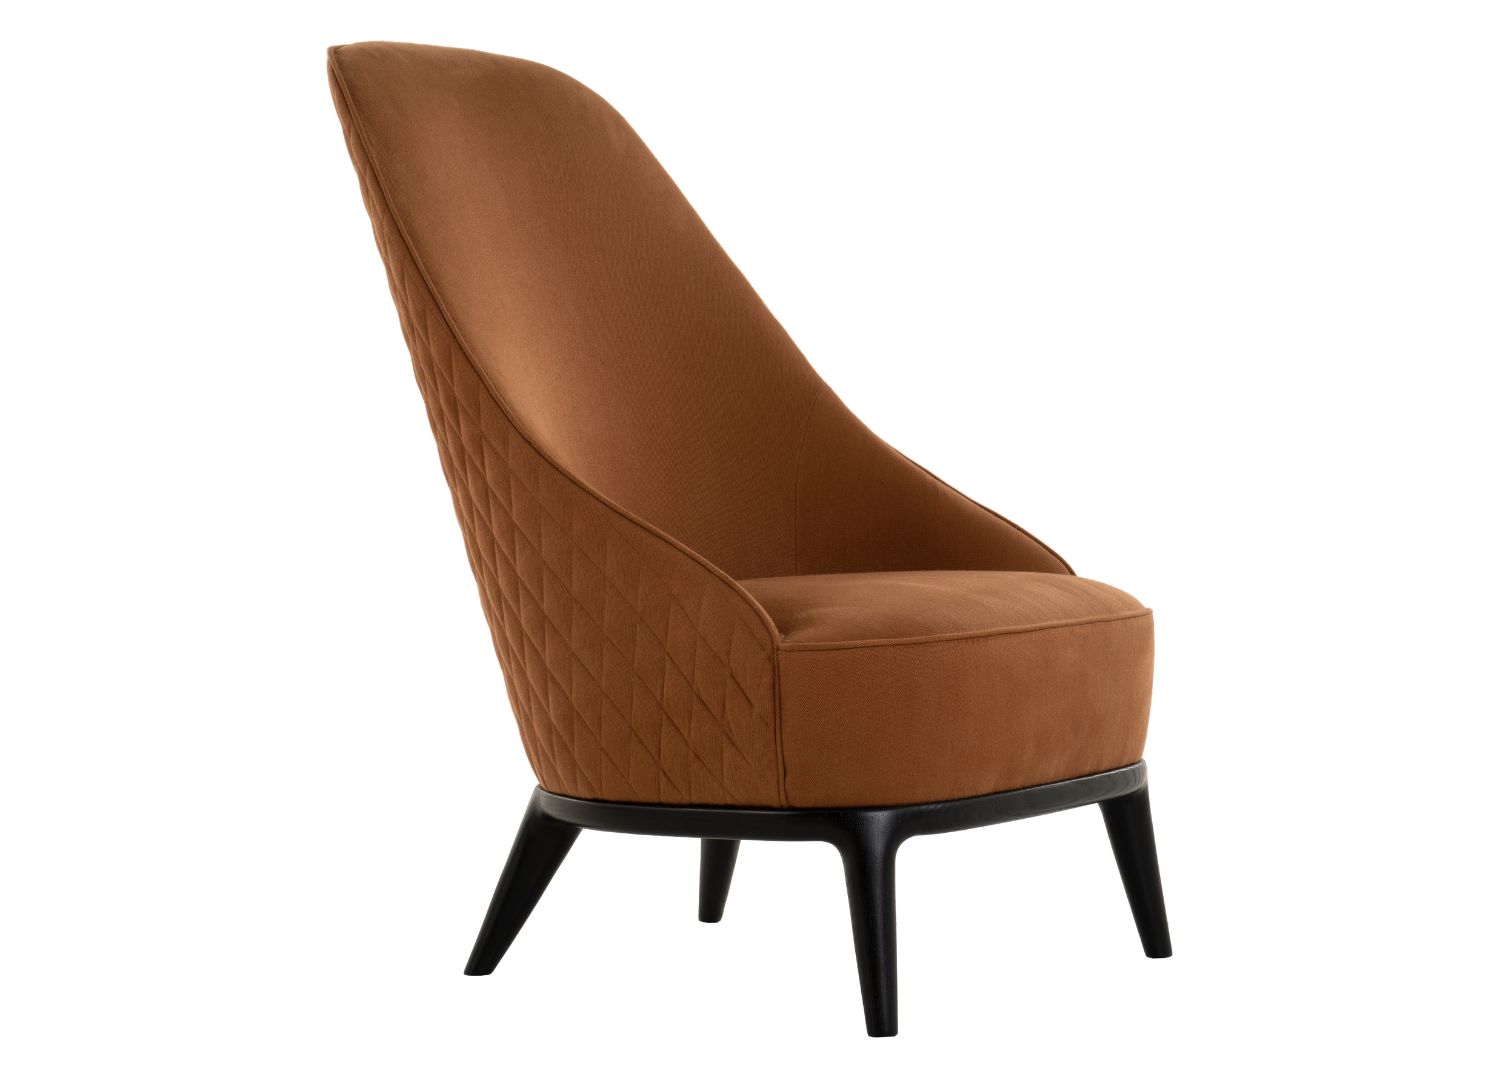 Leslie armchair by Opera Contemporary at Clerkenweel Design Week